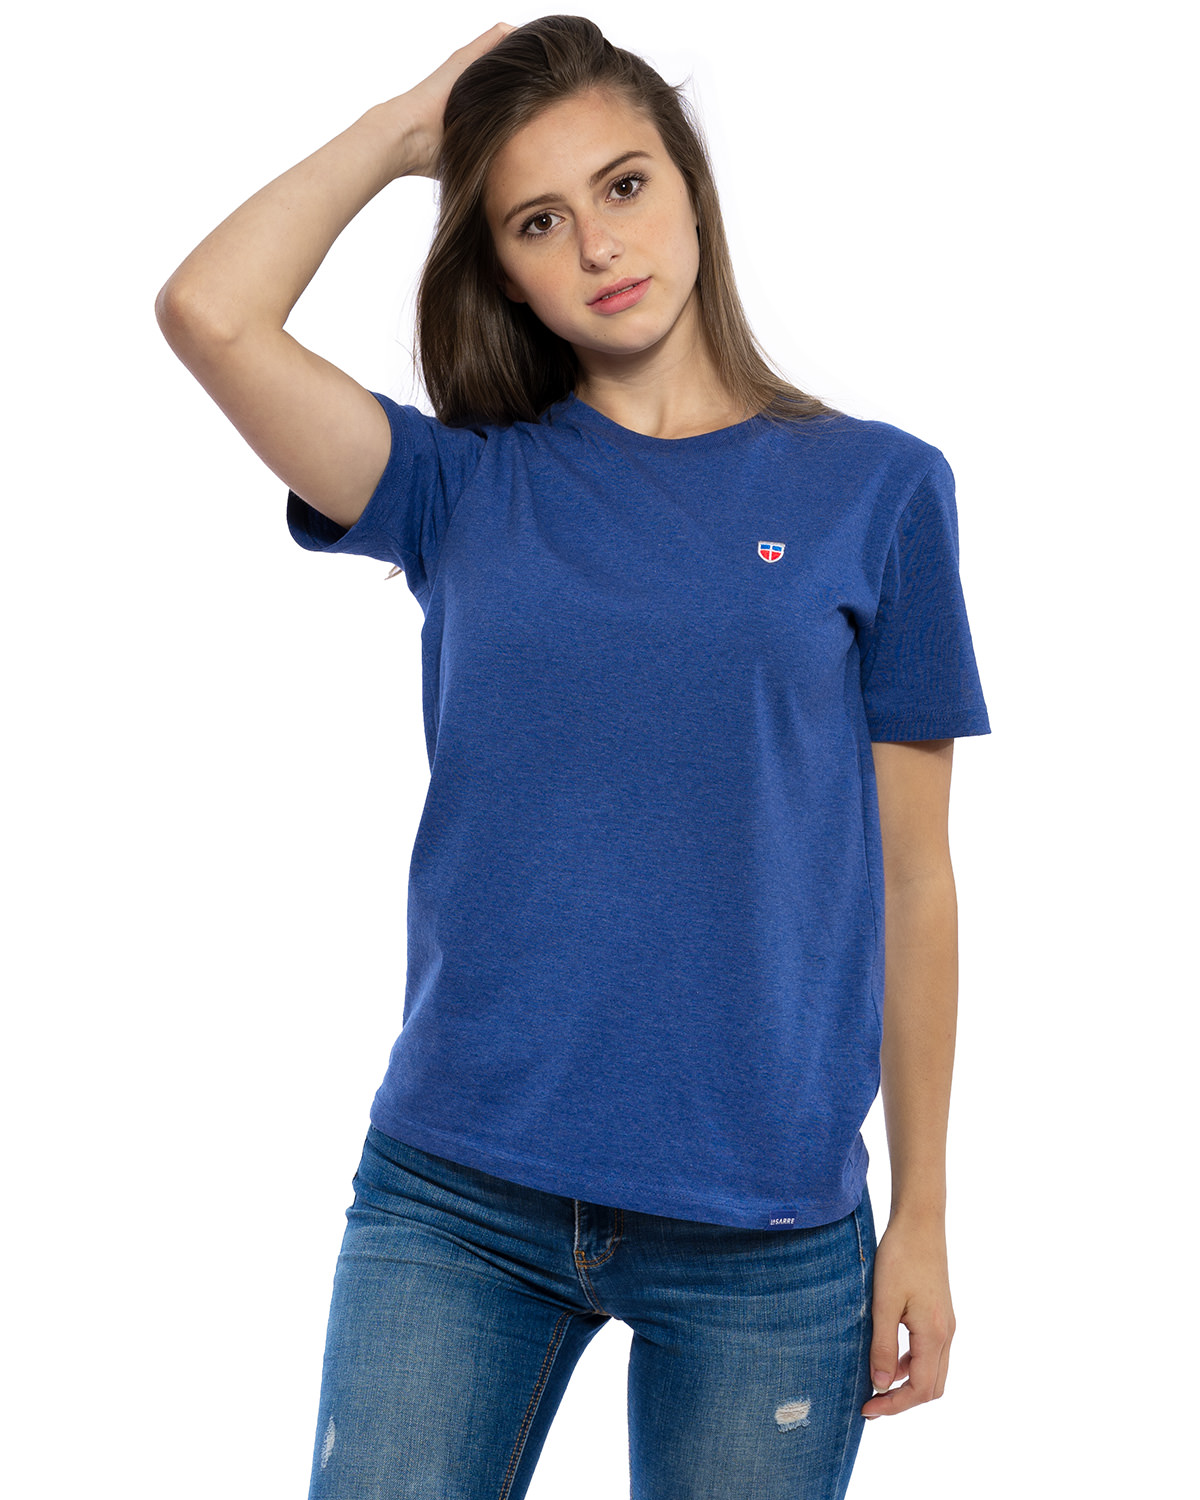 Hochwertig besticktes VIVE-LA-SARRE T-Shirt „CLAIRE“ für Frauen in der Farbe Kobalt von der Saarland Marke Lasarre mit dem LA-SARRE Wappen in Blau, Weiß, Rot auf der linken Brust und dem blauen LA-SARRE Markenzeichen am Saum